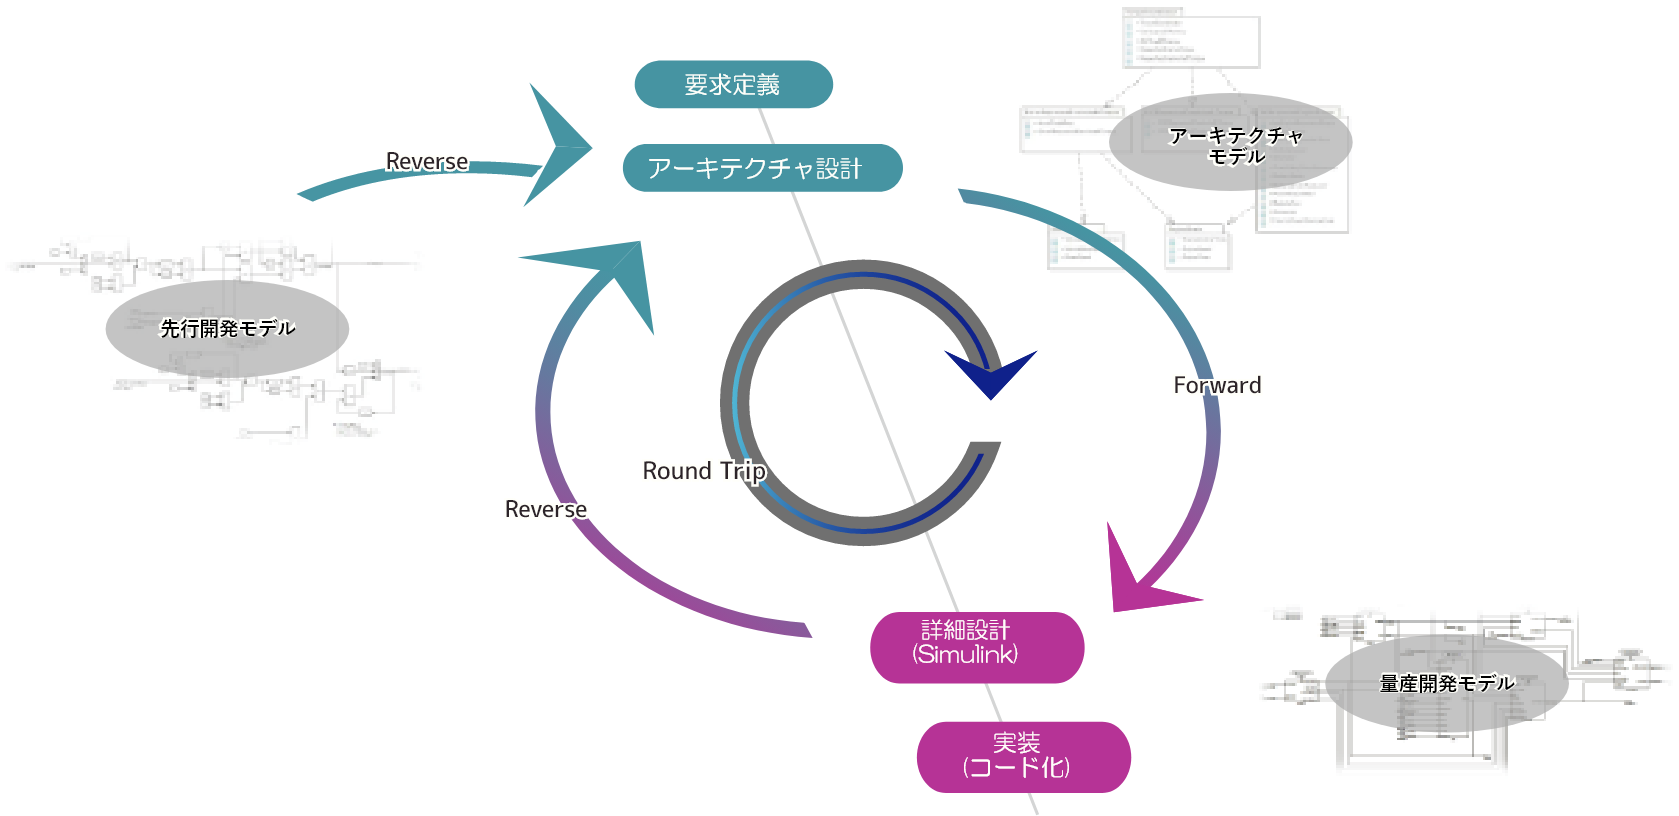 SysML･UML・DFD（データフローダイアグラム図）等の汎用モデリング言語で記述されたアーキテクチャモデルと、MATLAB／Simulink のモデルを相互に変換するモデル変換ツール『mtrip』【先行開発モデル】Simulink,Stateflow⇒mtrip⇔【アーキテクチャ設計モデル】UML・クラス図、パッケージ図・コンポーネント図、DFD（データフローダイアグラム図）⇒【量産開発モデル】Simulink、Stateflow